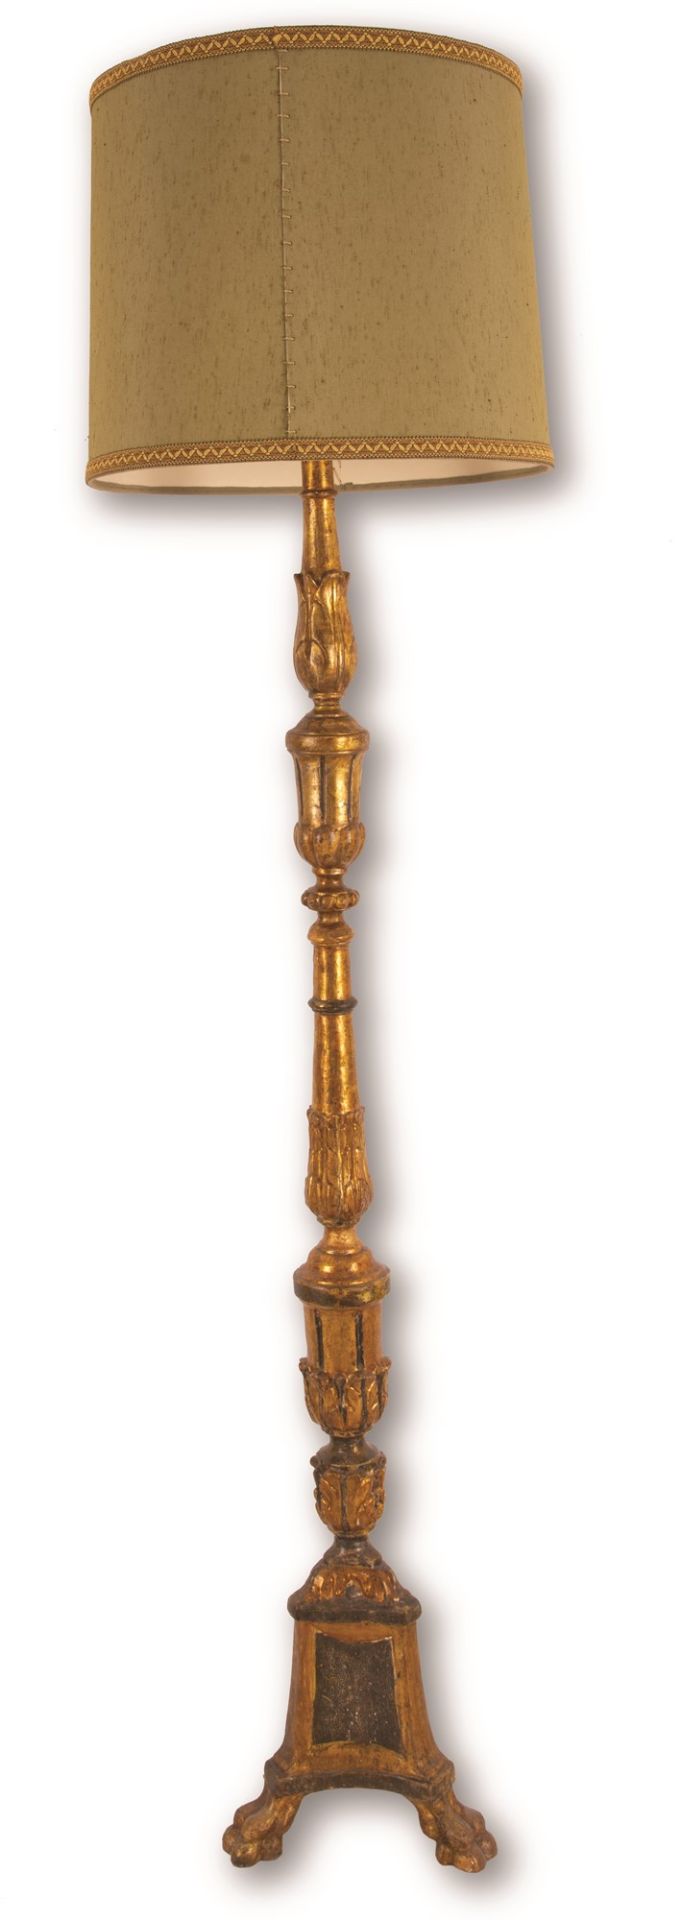 Grande torciere in legno intagliato in argento dorato a mecca. Piedi ferini. - Bild 2 aus 2